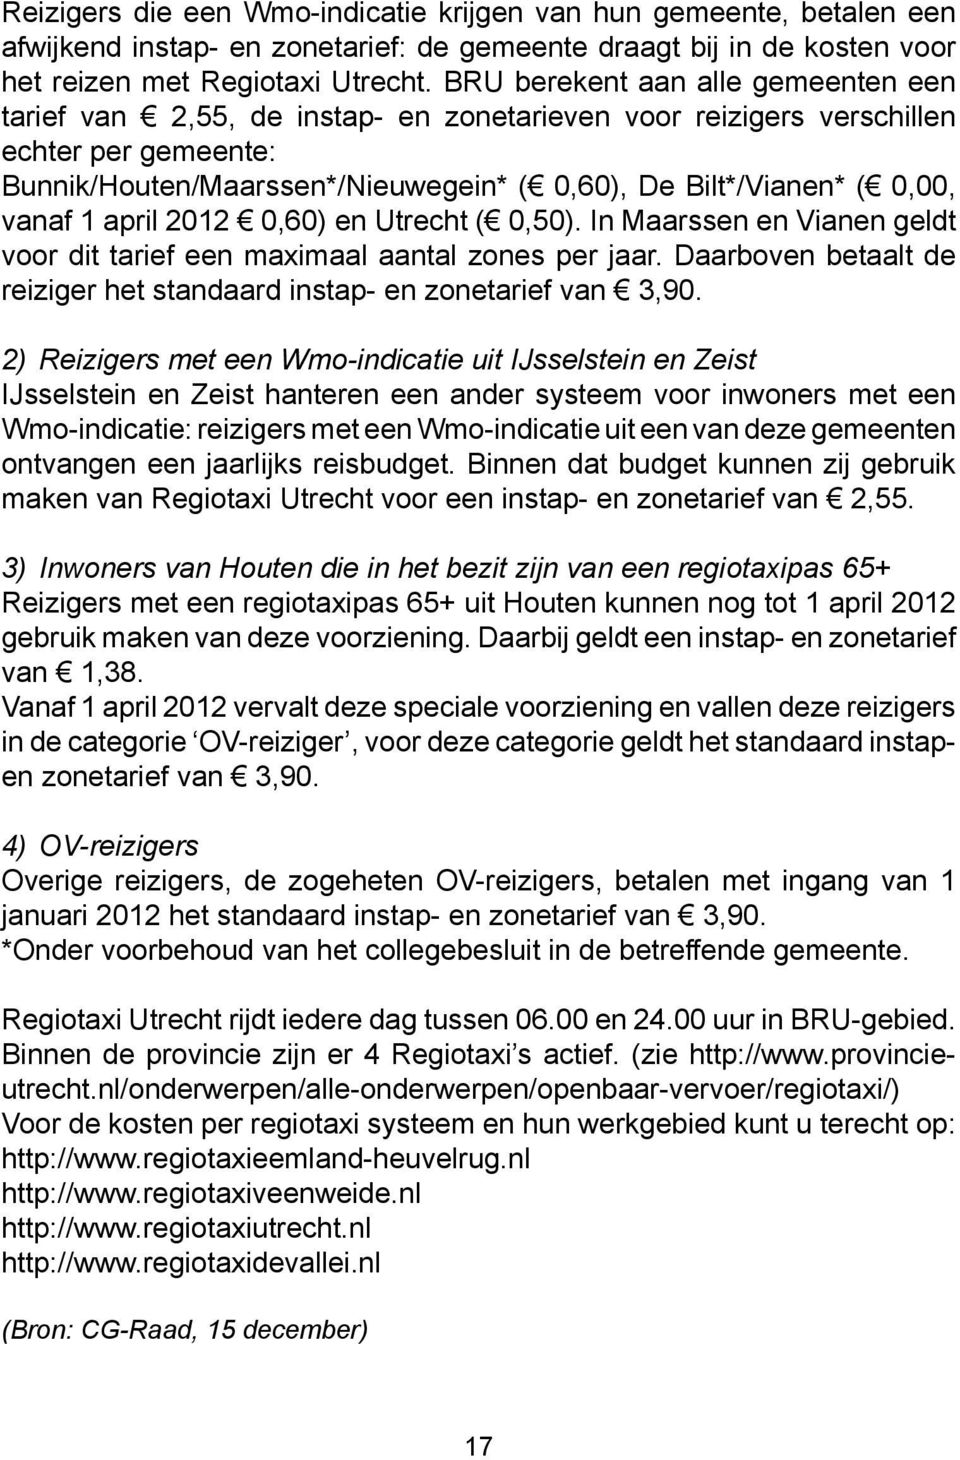 vanaf 1 april 2012 0,60) en Utrecht ( 0,50). In Maarssen en Vianen geldt voor dit tarief een maximaal aantal zones per jaar. Daarboven betaalt de reiziger het standaard instap- en zonetarief van 3,90.